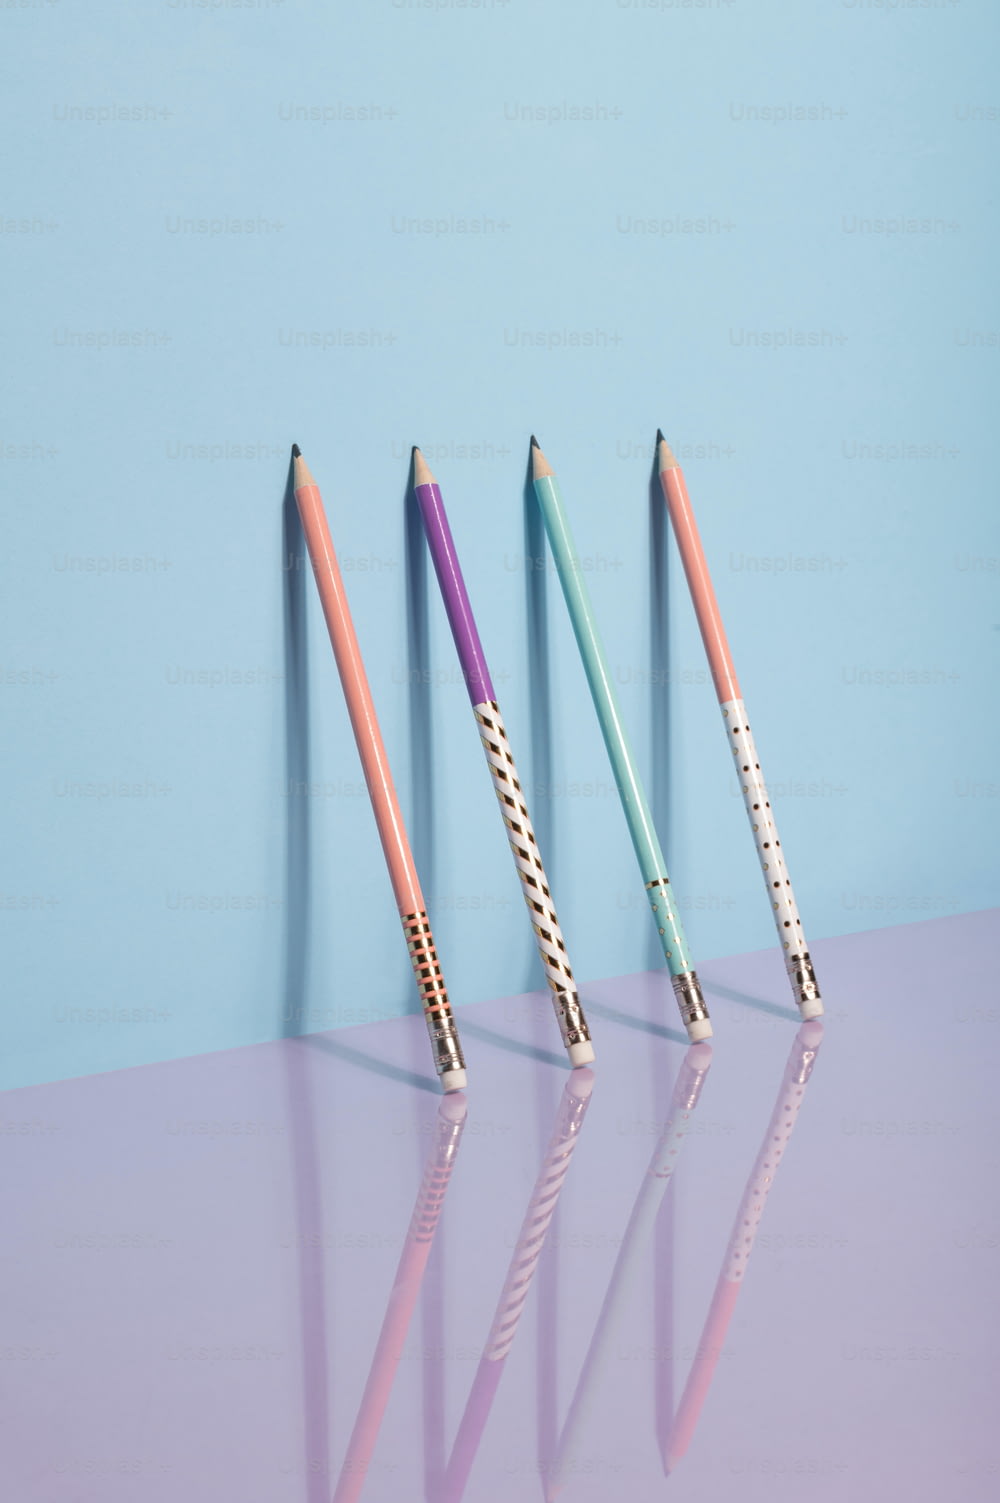 Drei verschiedenfarbige Stifte sind in einer Reihe aufgereiht